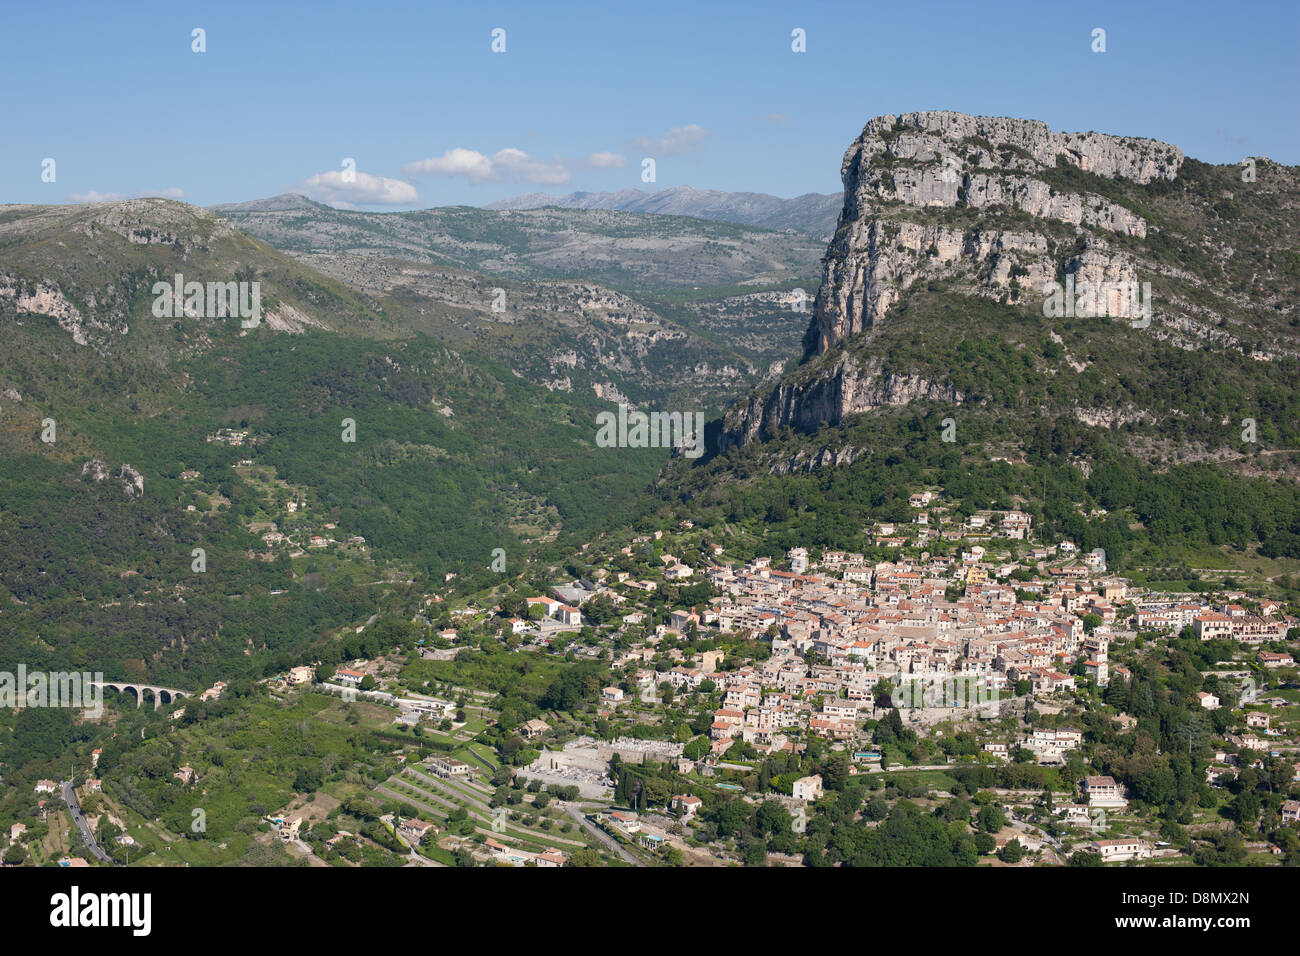 LUFTAUFNAHME. Mittelalterliches Dorf am Fuße einer massiven 400 Meter hohen Klippe. Saint-Jeannet, Französische Riviera, Alpes-Maritimes, Frankreich. Stockfoto